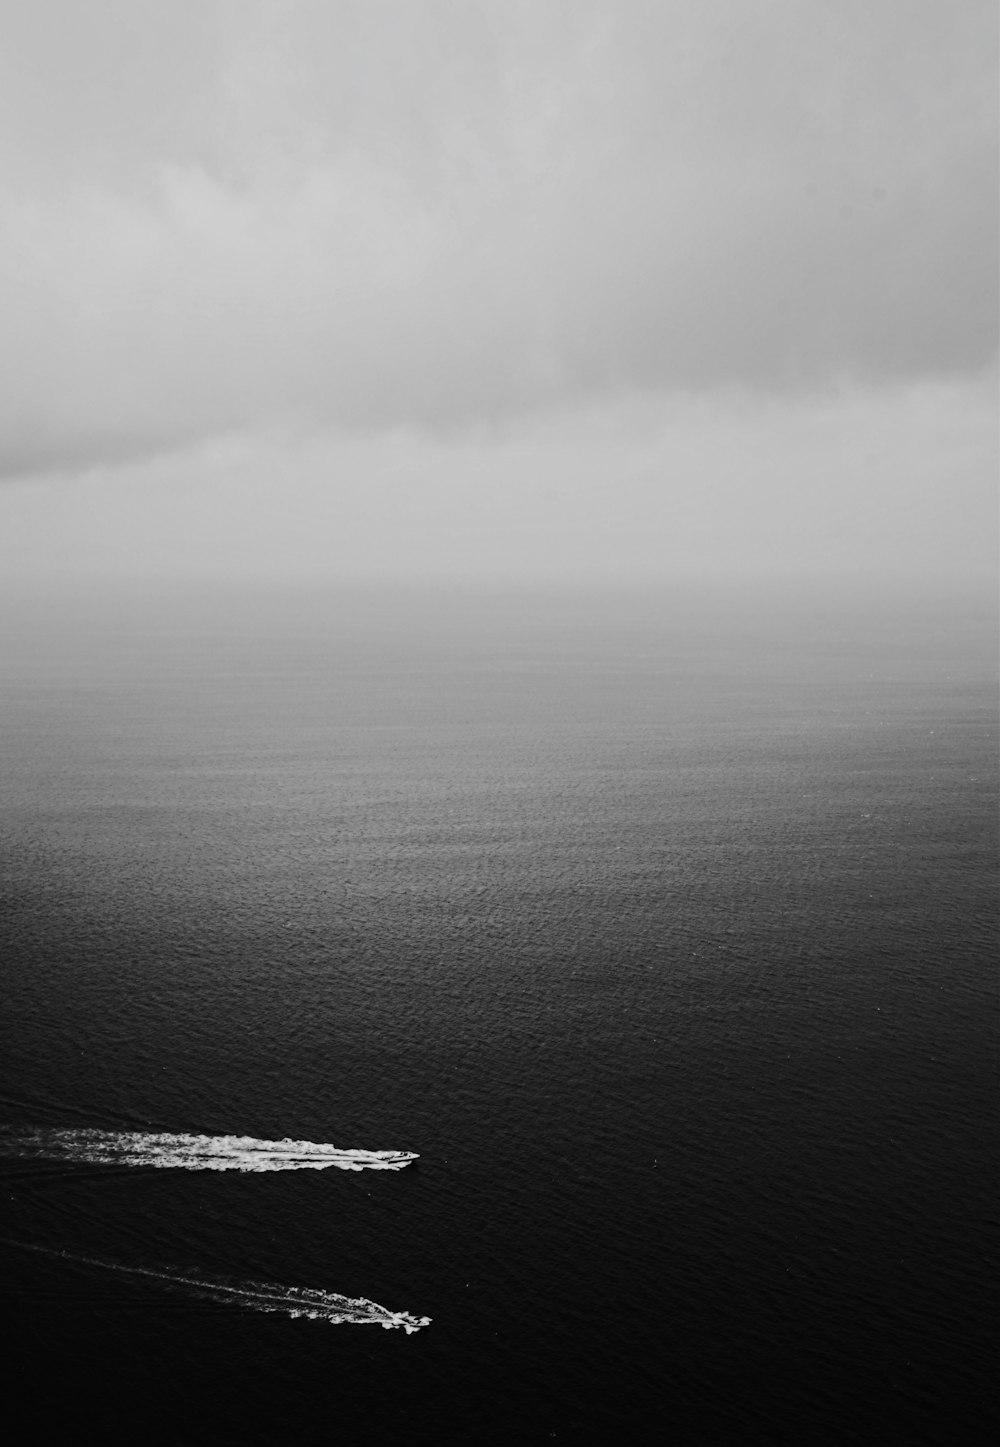 fotografia in scala di grigi di due barche su uno specchio d'acqua